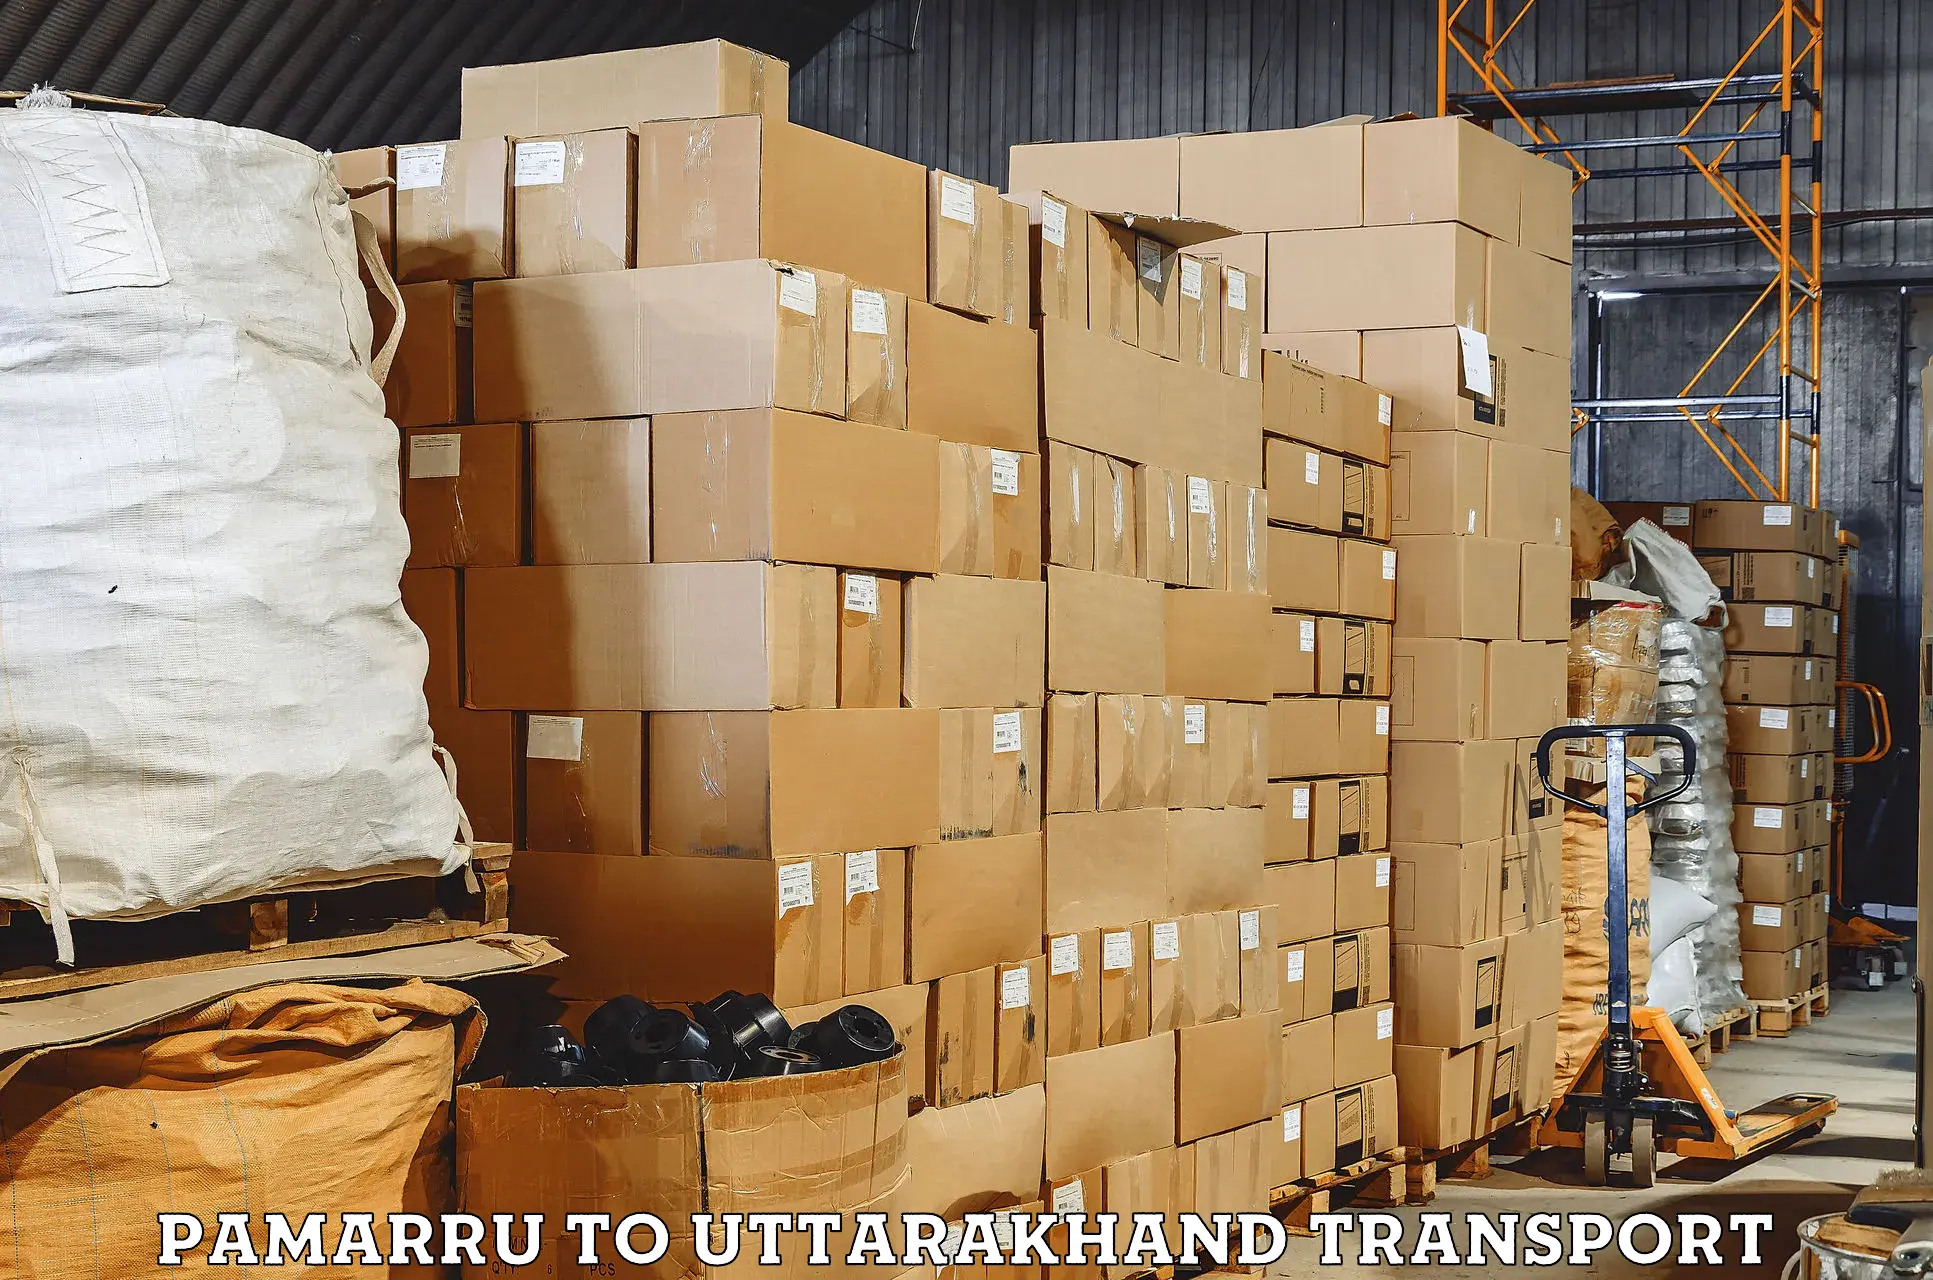 Nearby transport service Pamarru to Uttarkashi